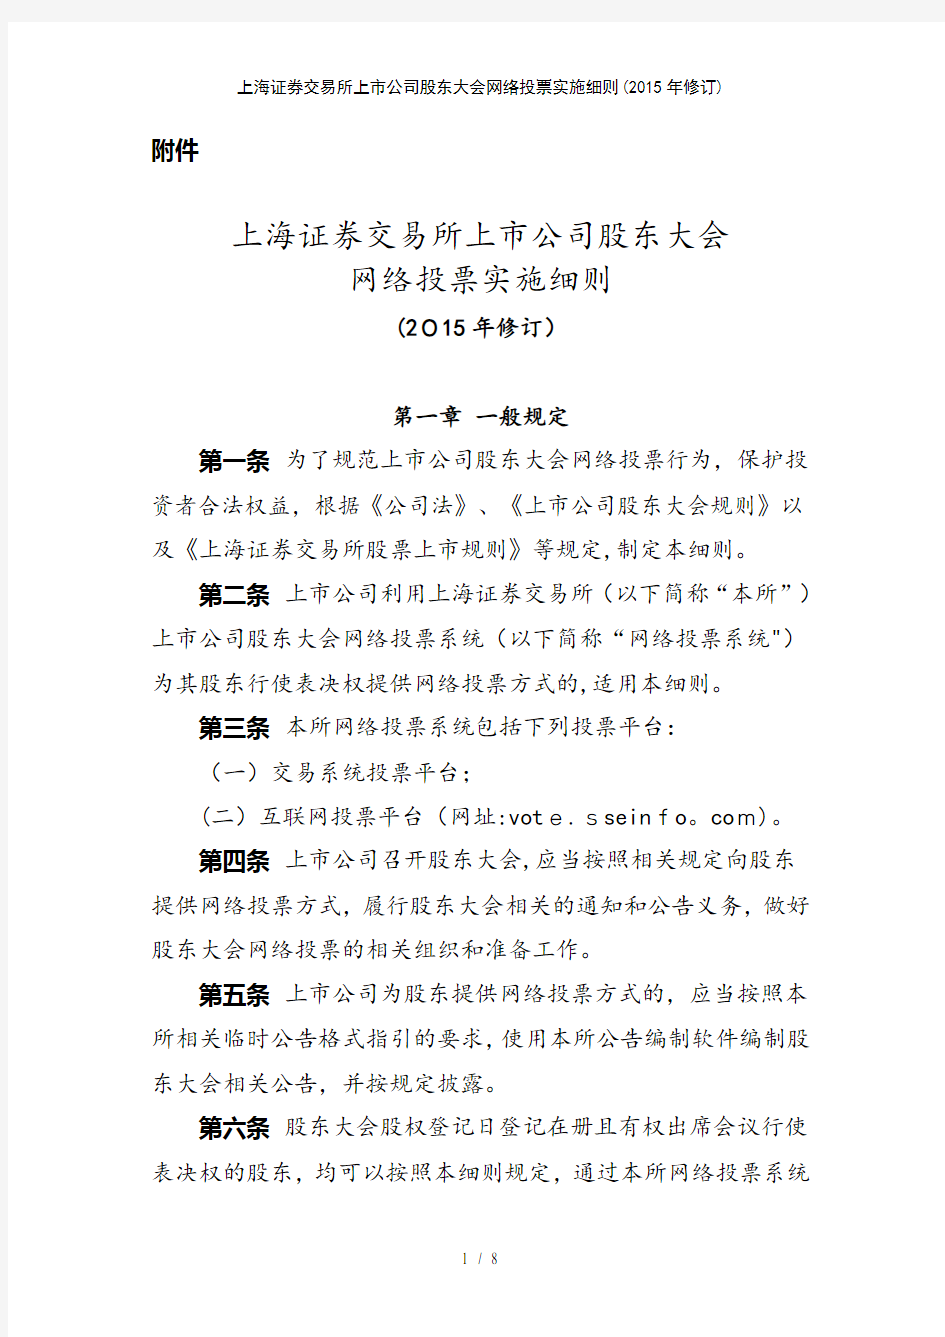 上海证券交易所上市公司股东大会网络投票实施细则